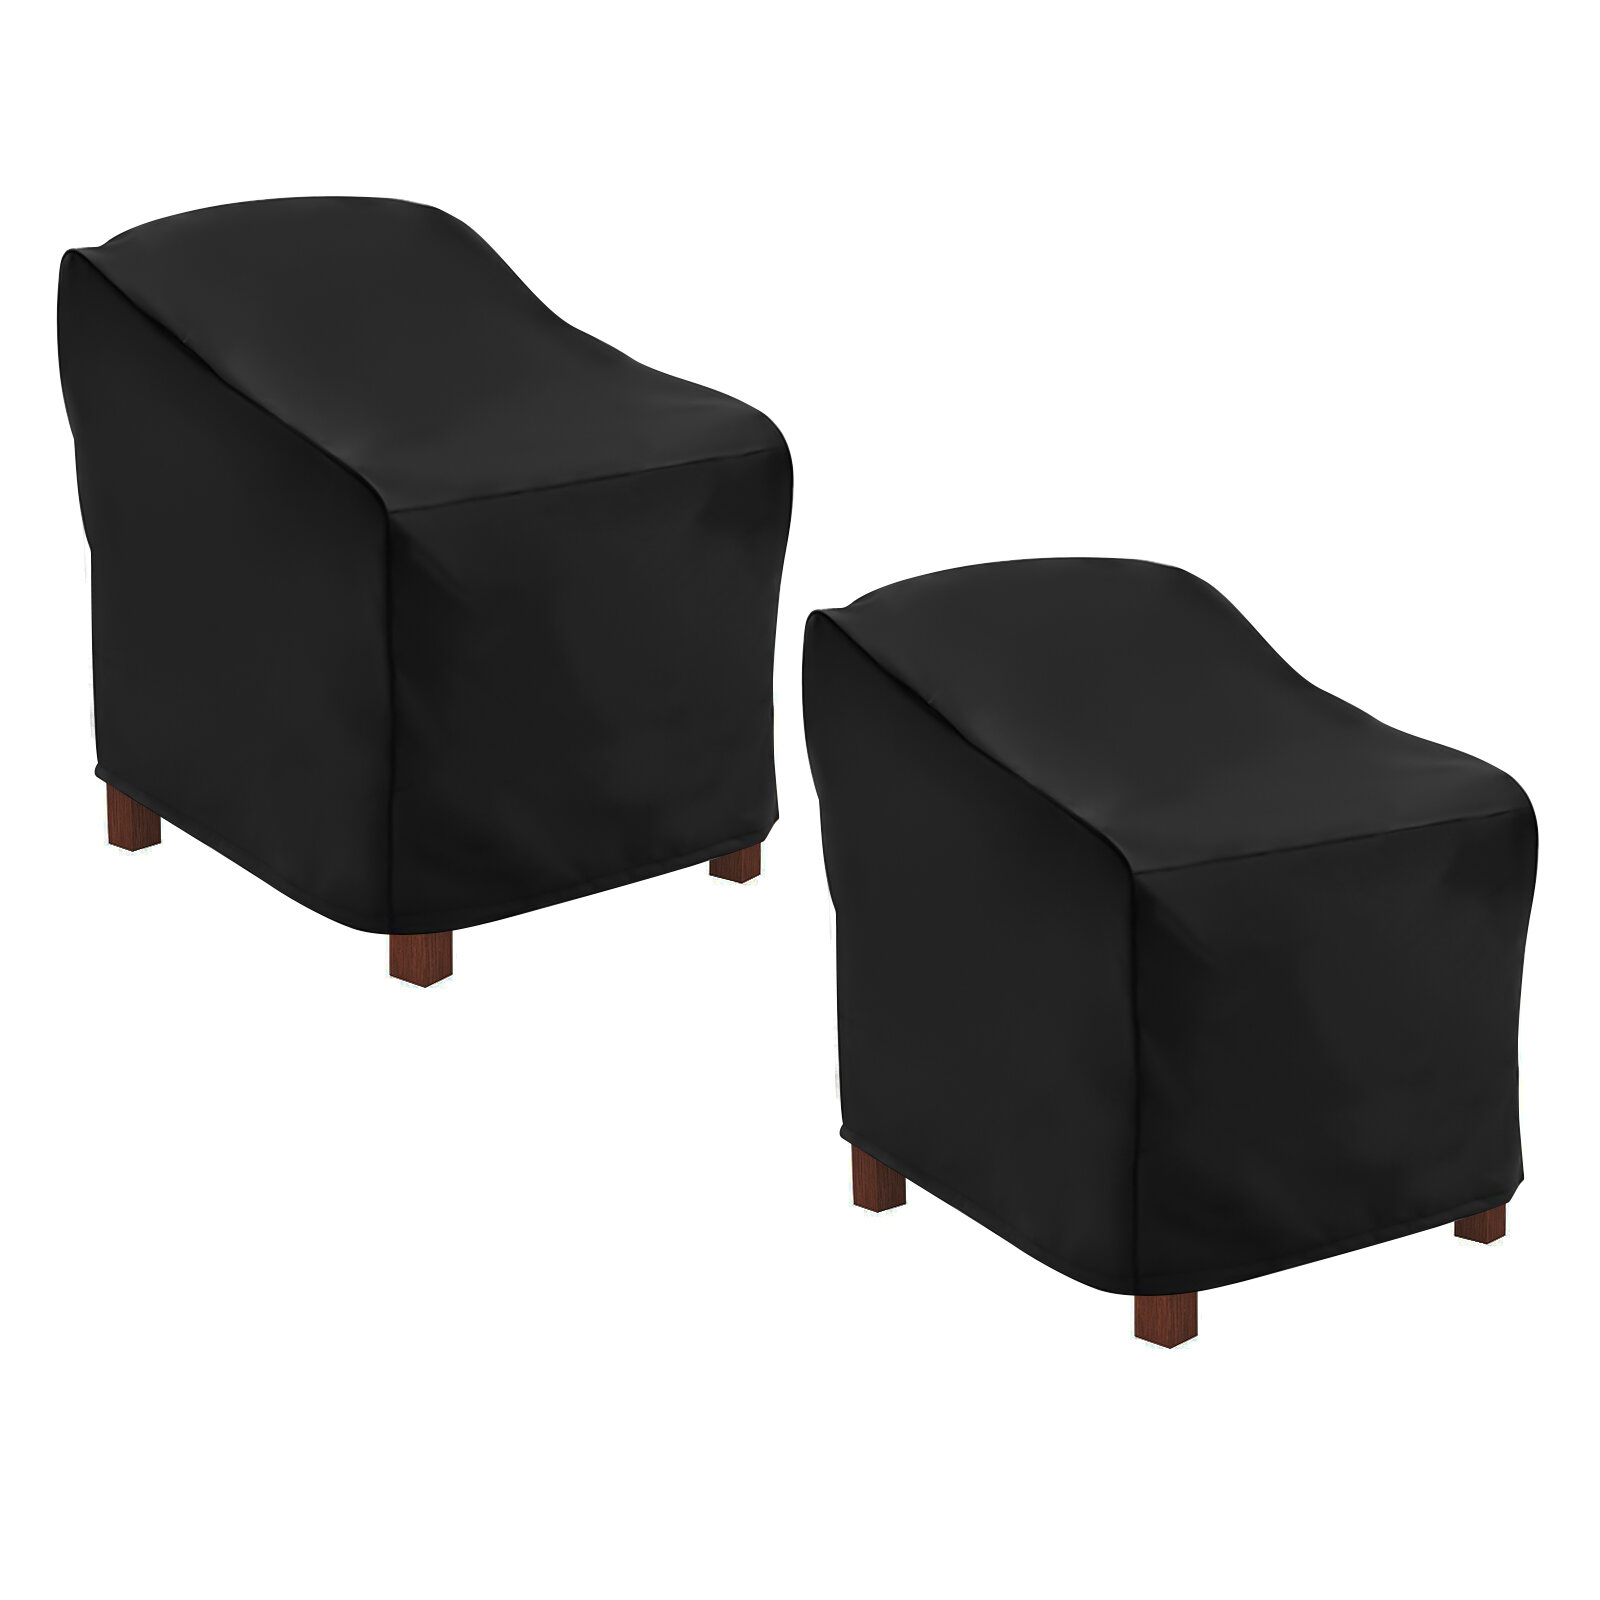 NASUM Patio Chair Covers, NASUM Buiten Tuinmeubelhoezen, Lounge Diepe Buitenstoelhoes, UV-beschermd met Waterproof - 38''L x 31''W x 29''H, 2-Pack, Zwart